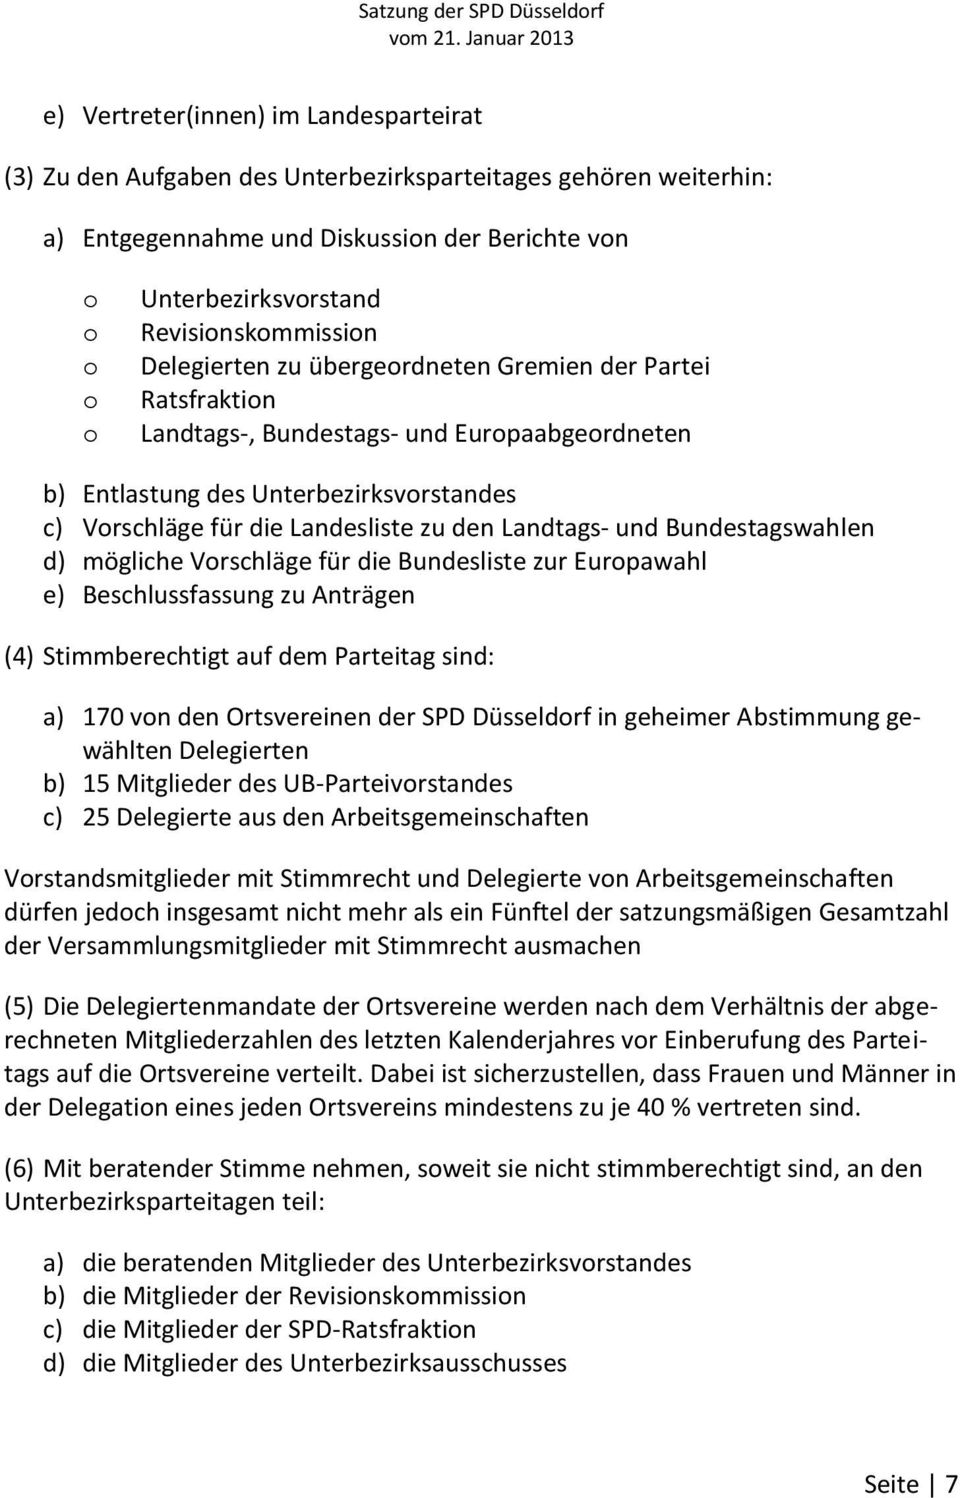 Landesliste zu den Landtags- und Bundestagswahlen d) mögliche Vorschläge für die Bundesliste zur Europawahl e) Beschlussfassung zu Anträgen (4) Stimmberechtigt auf dem Parteitag sind: a) 170 von den